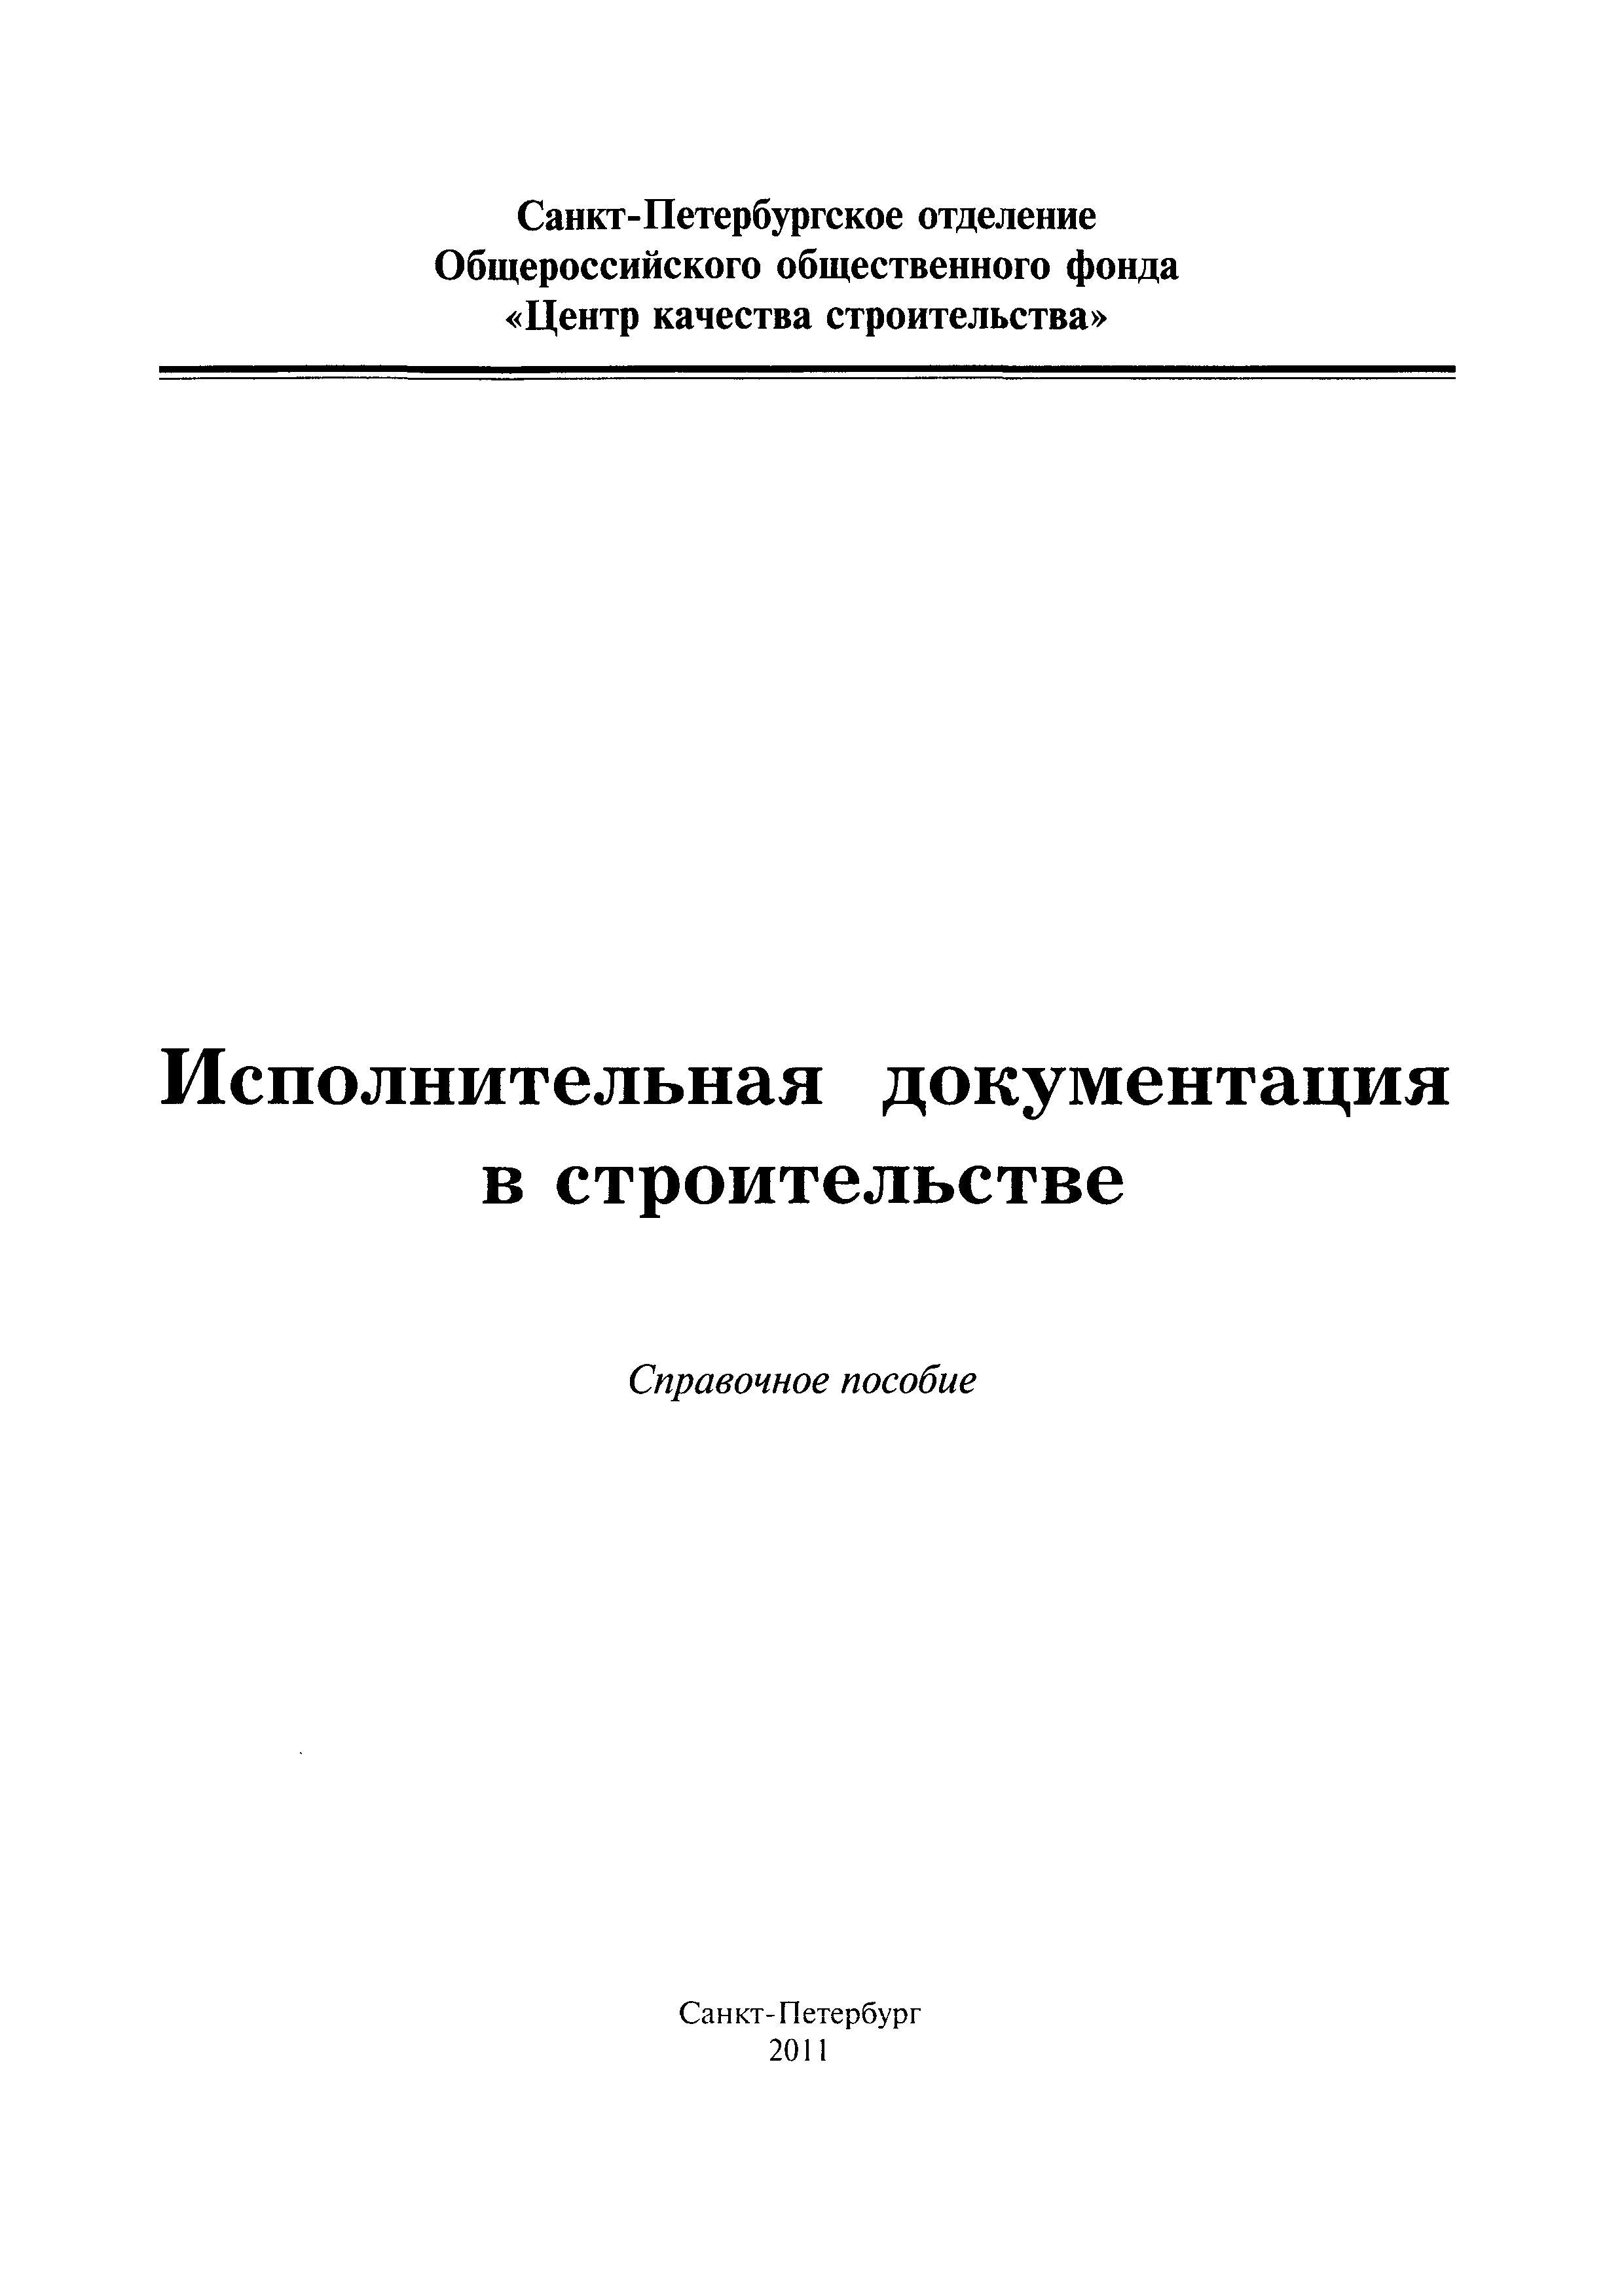 Инструкция по оформлению приемо сдаточной документации по электромонтажным работам казахстана